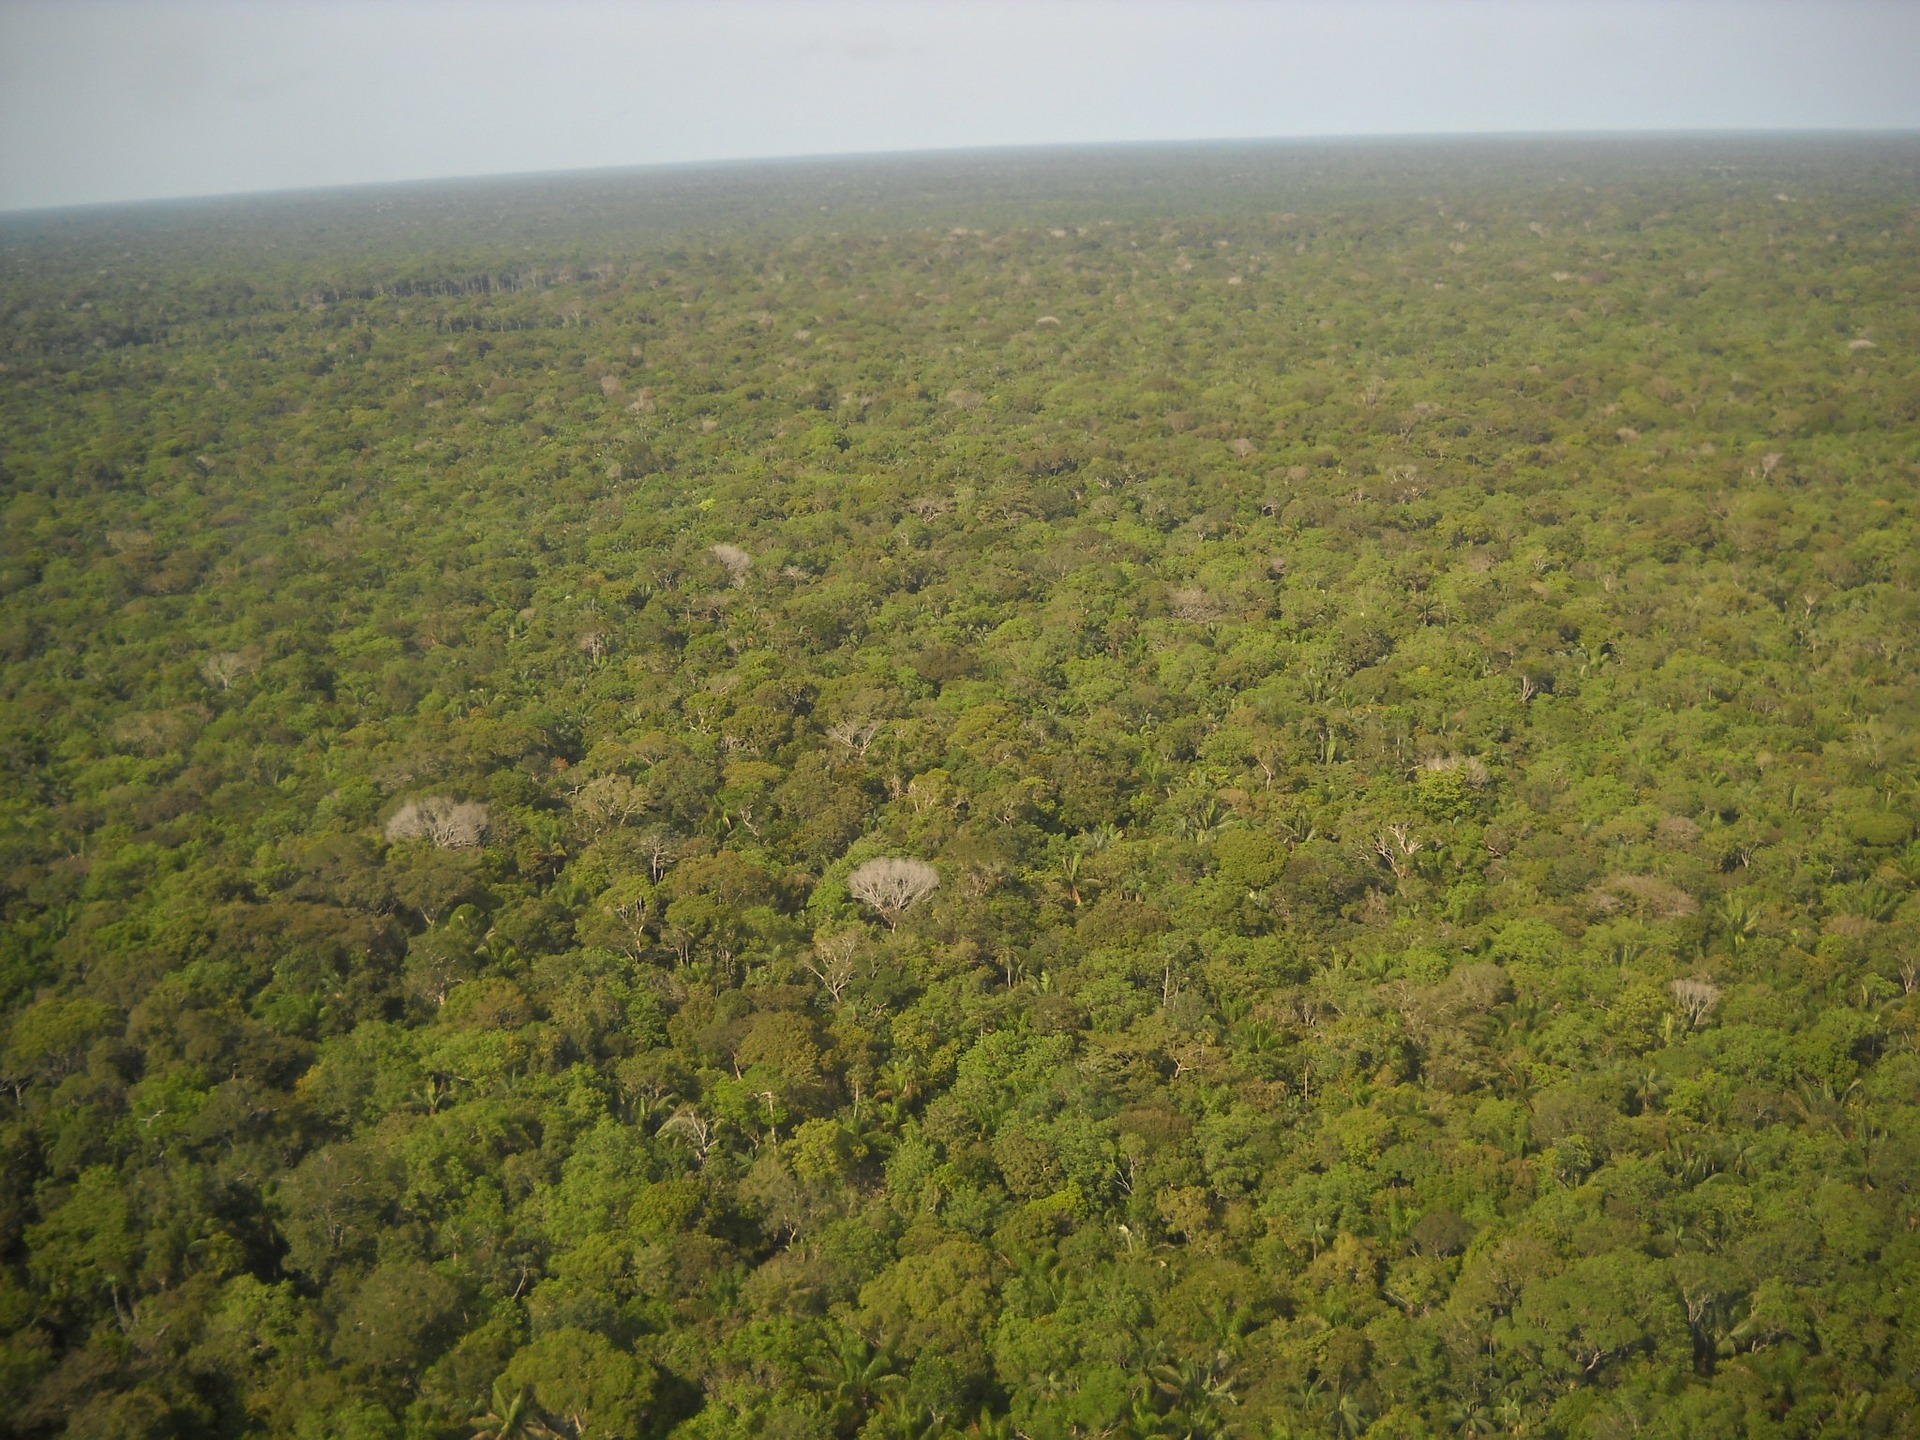 Zhruba 17 percent Amazonského pralesa bolo v posledných piatich desaťročiach zničených, väčšinou kvôli chovu dobytka. Približne 80 percent druhov z celosvetovej populácie možeme nájsť v tropických dažďových pralesoch. Odlesňovanie hoci aj v malej oblasti môže spôsobiť vyhynutie zvieraťa, pretože niektoré druhy žijú len v malých izolovaných oblastiach.

Každý rok zmizne viac ako 18 miliónov akrov lesa na celom svete. To je asi 27 futbalových ihrísk za každú minútu. Odlesňovaním zároveň prichádzame o stromy, ktoré pomáhajú absorbovať oxid uhličitý z atmosféry, čo prispieva k globálnemu otepľovaniu.